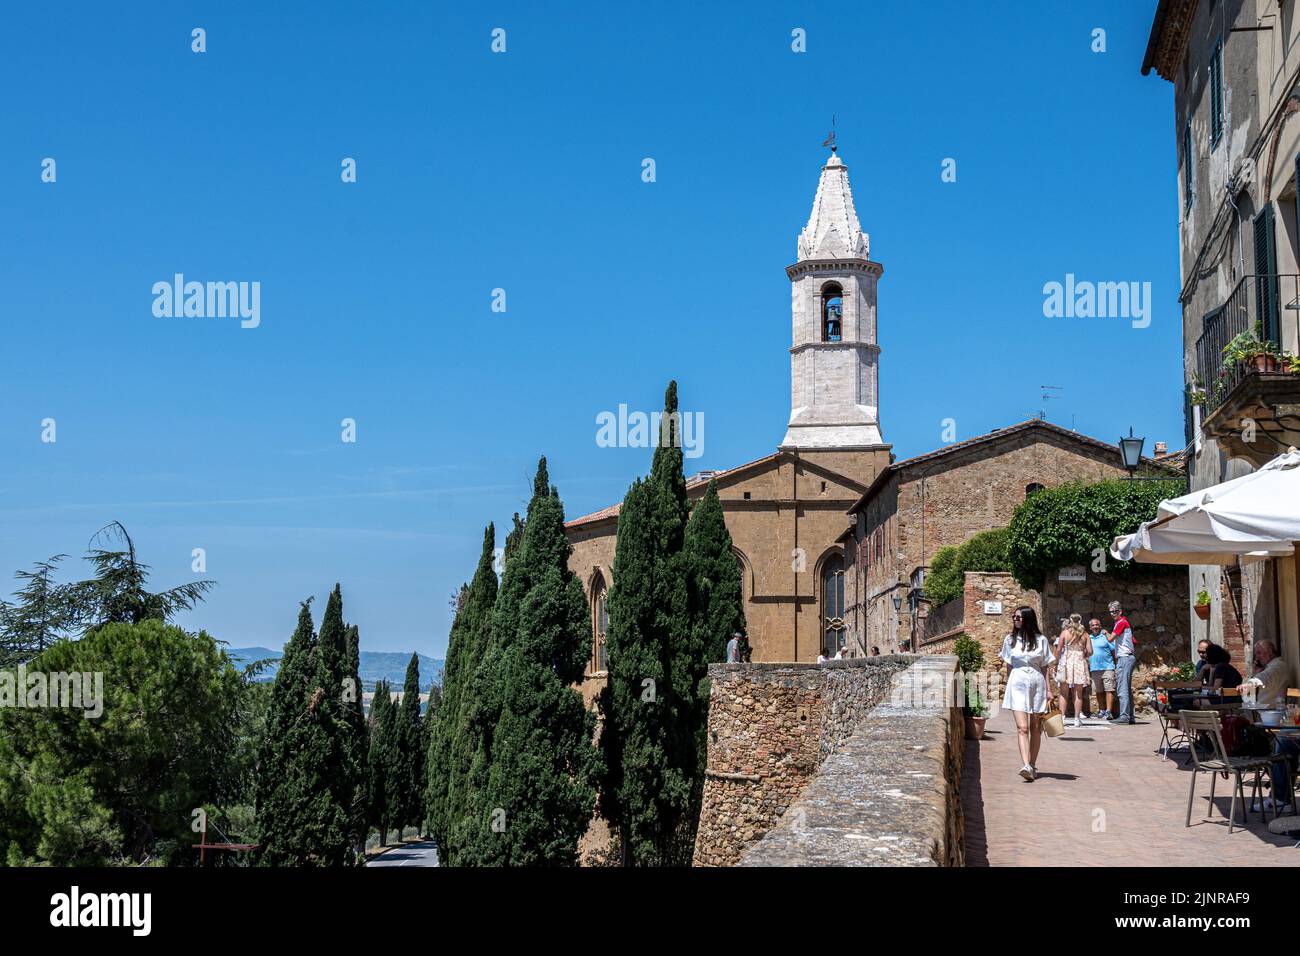 Touristes et cafés le long de la passerelle au-dessus des murs de Pienza, Toscane Banque D'Images